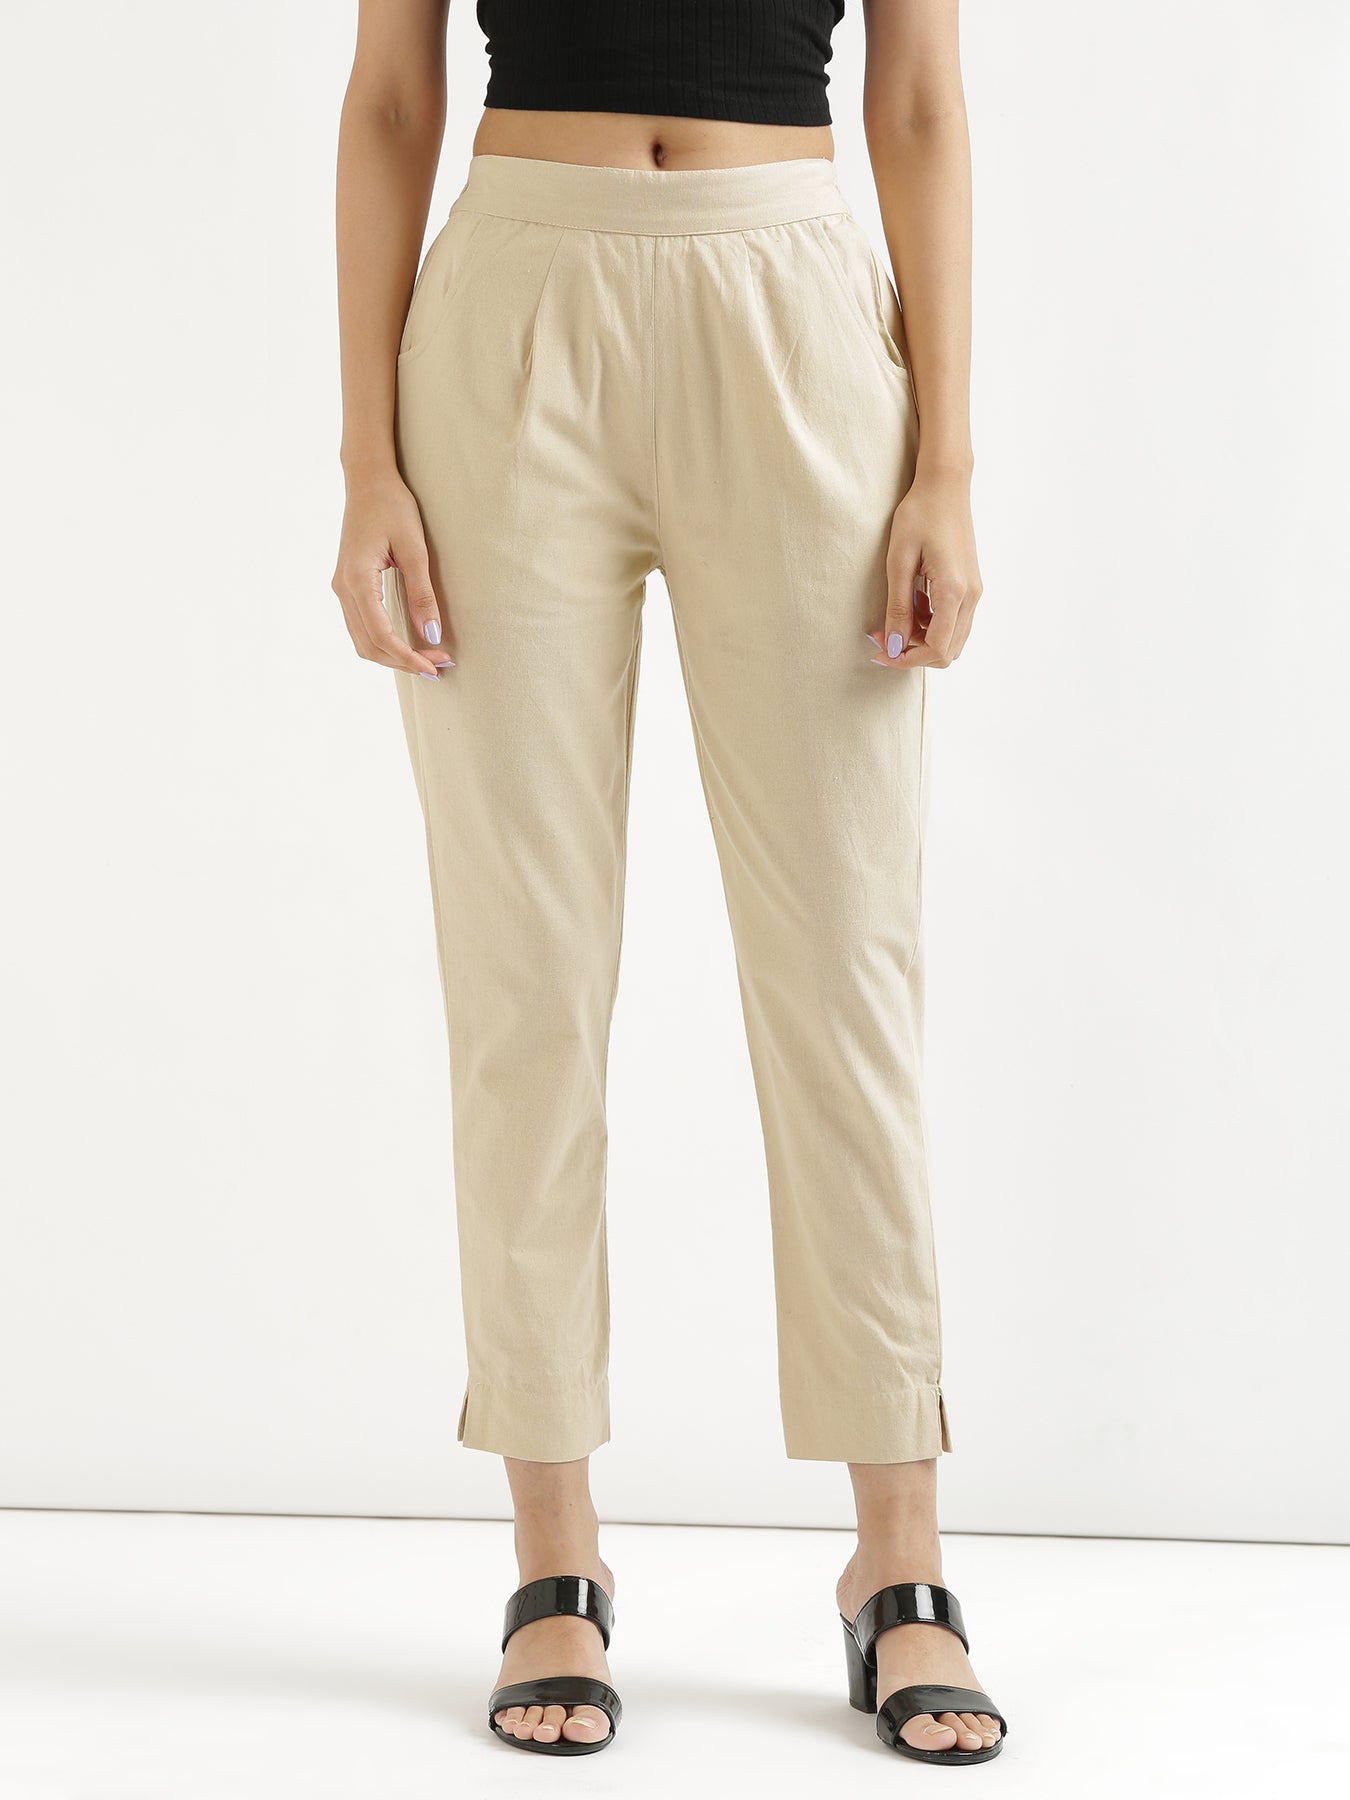 JNGSA Suit Pants for Men Men Casual Button Zipper Loose Plaid Casual Pencil Pants  Trousers Dress Pants Regular Fit Gray Clearance - Walmart.com